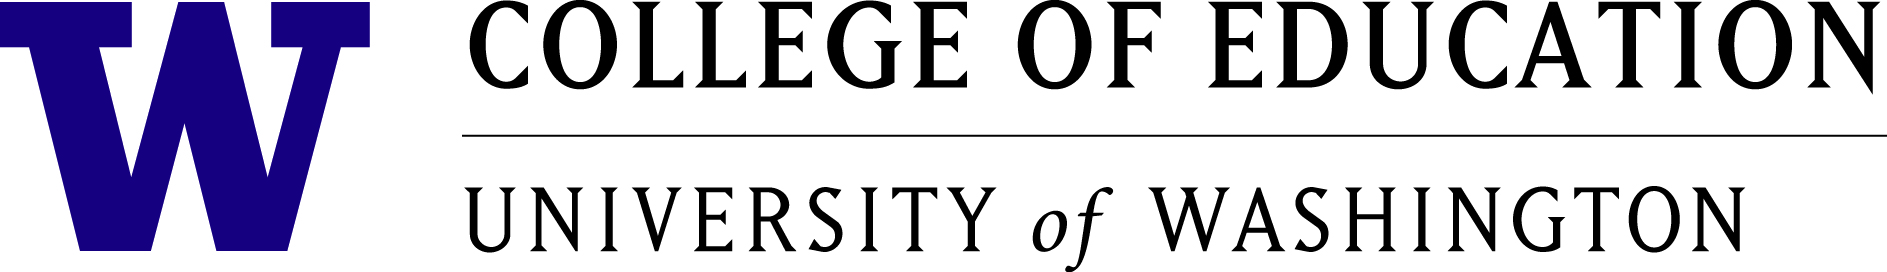 University of Washington, College of Education logo